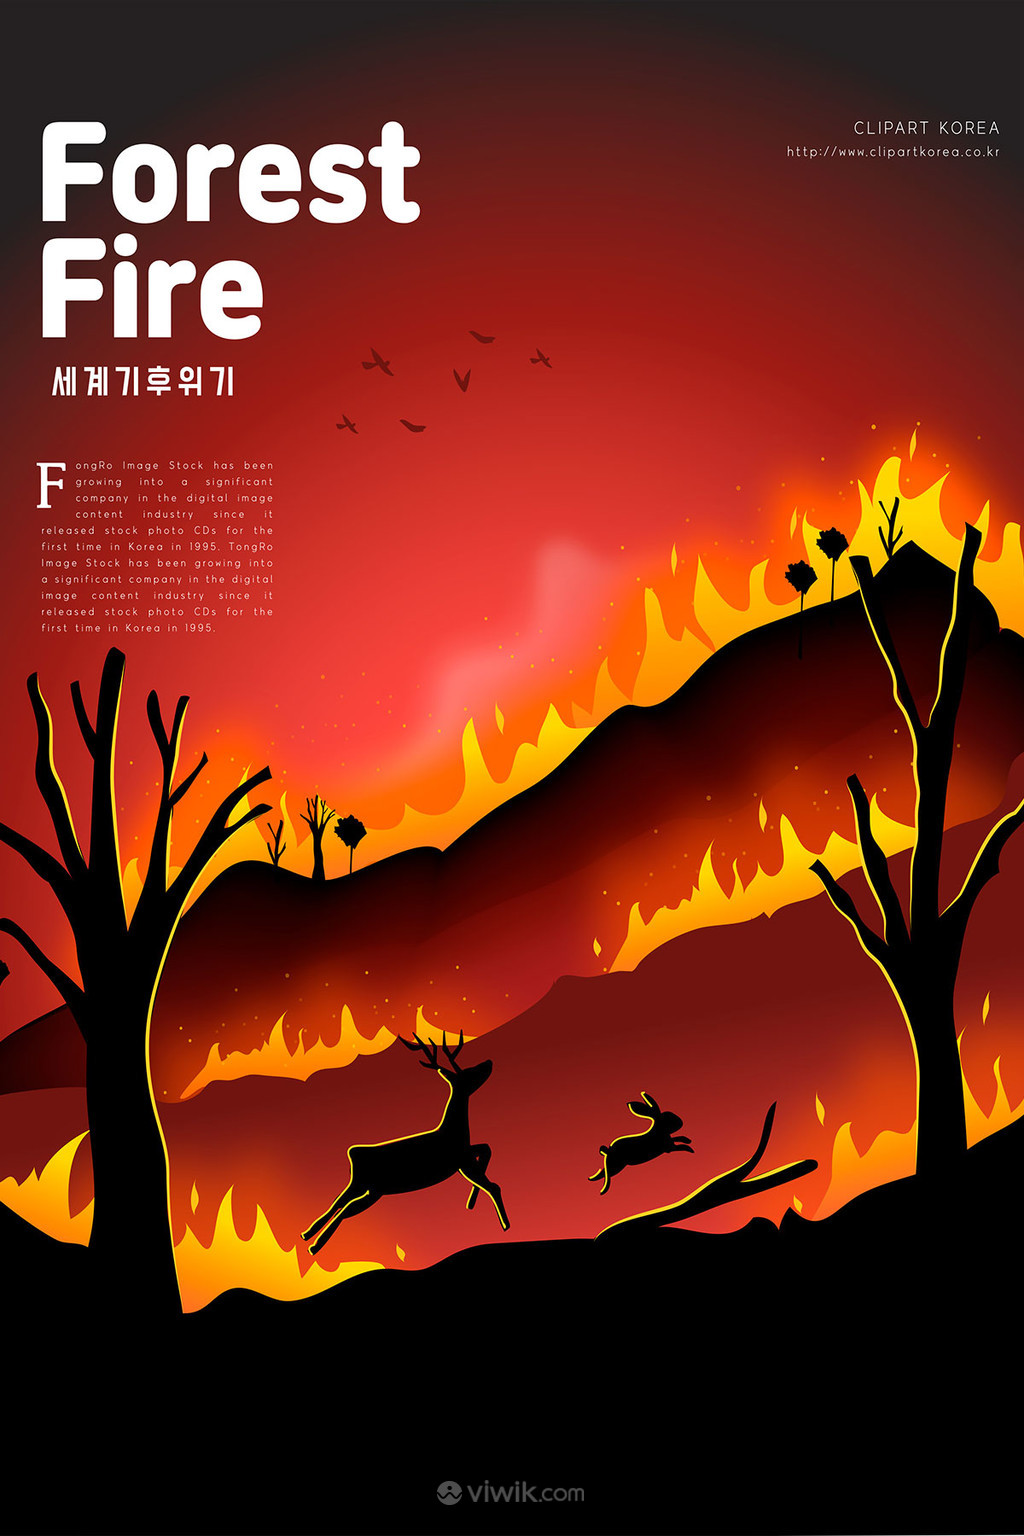 森林火灾环保广告海报矢量插画模板